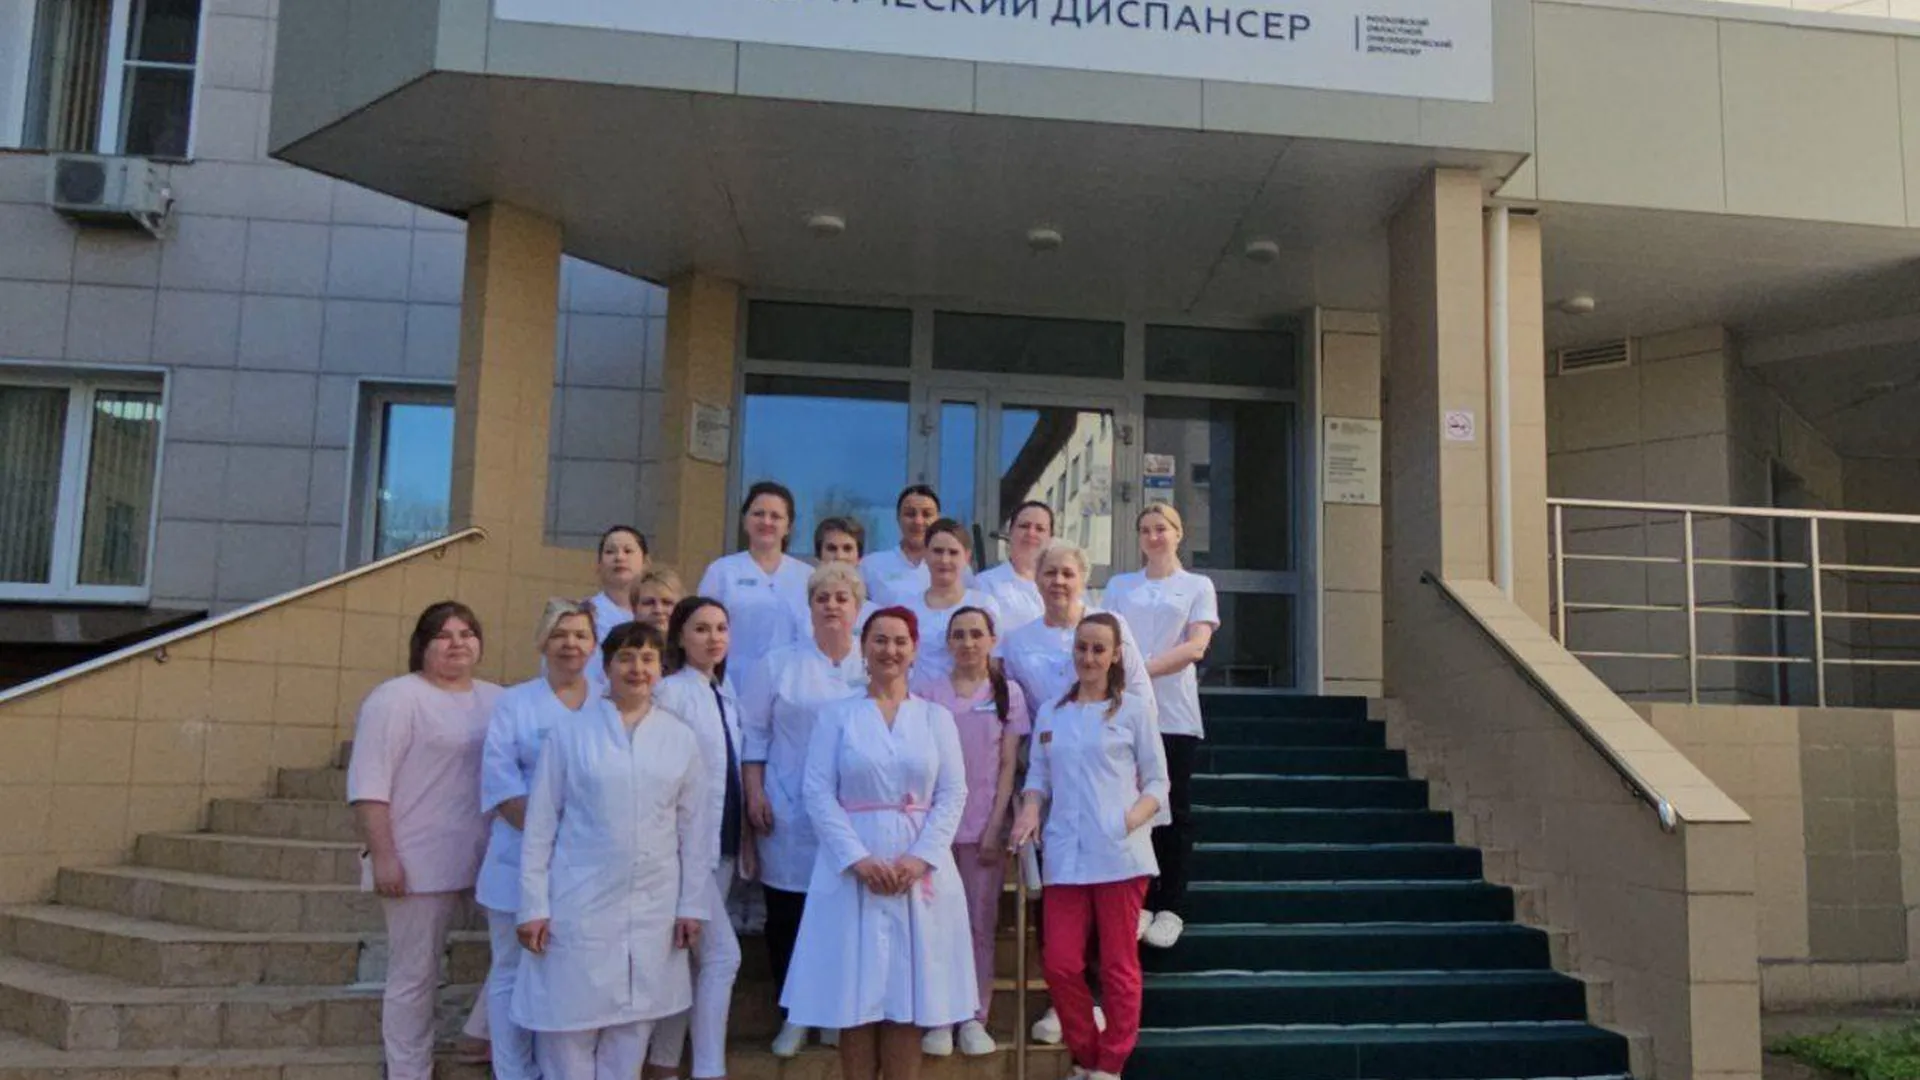 Конкурс «Народная медицинская сестра» стартовал в Подмосковье